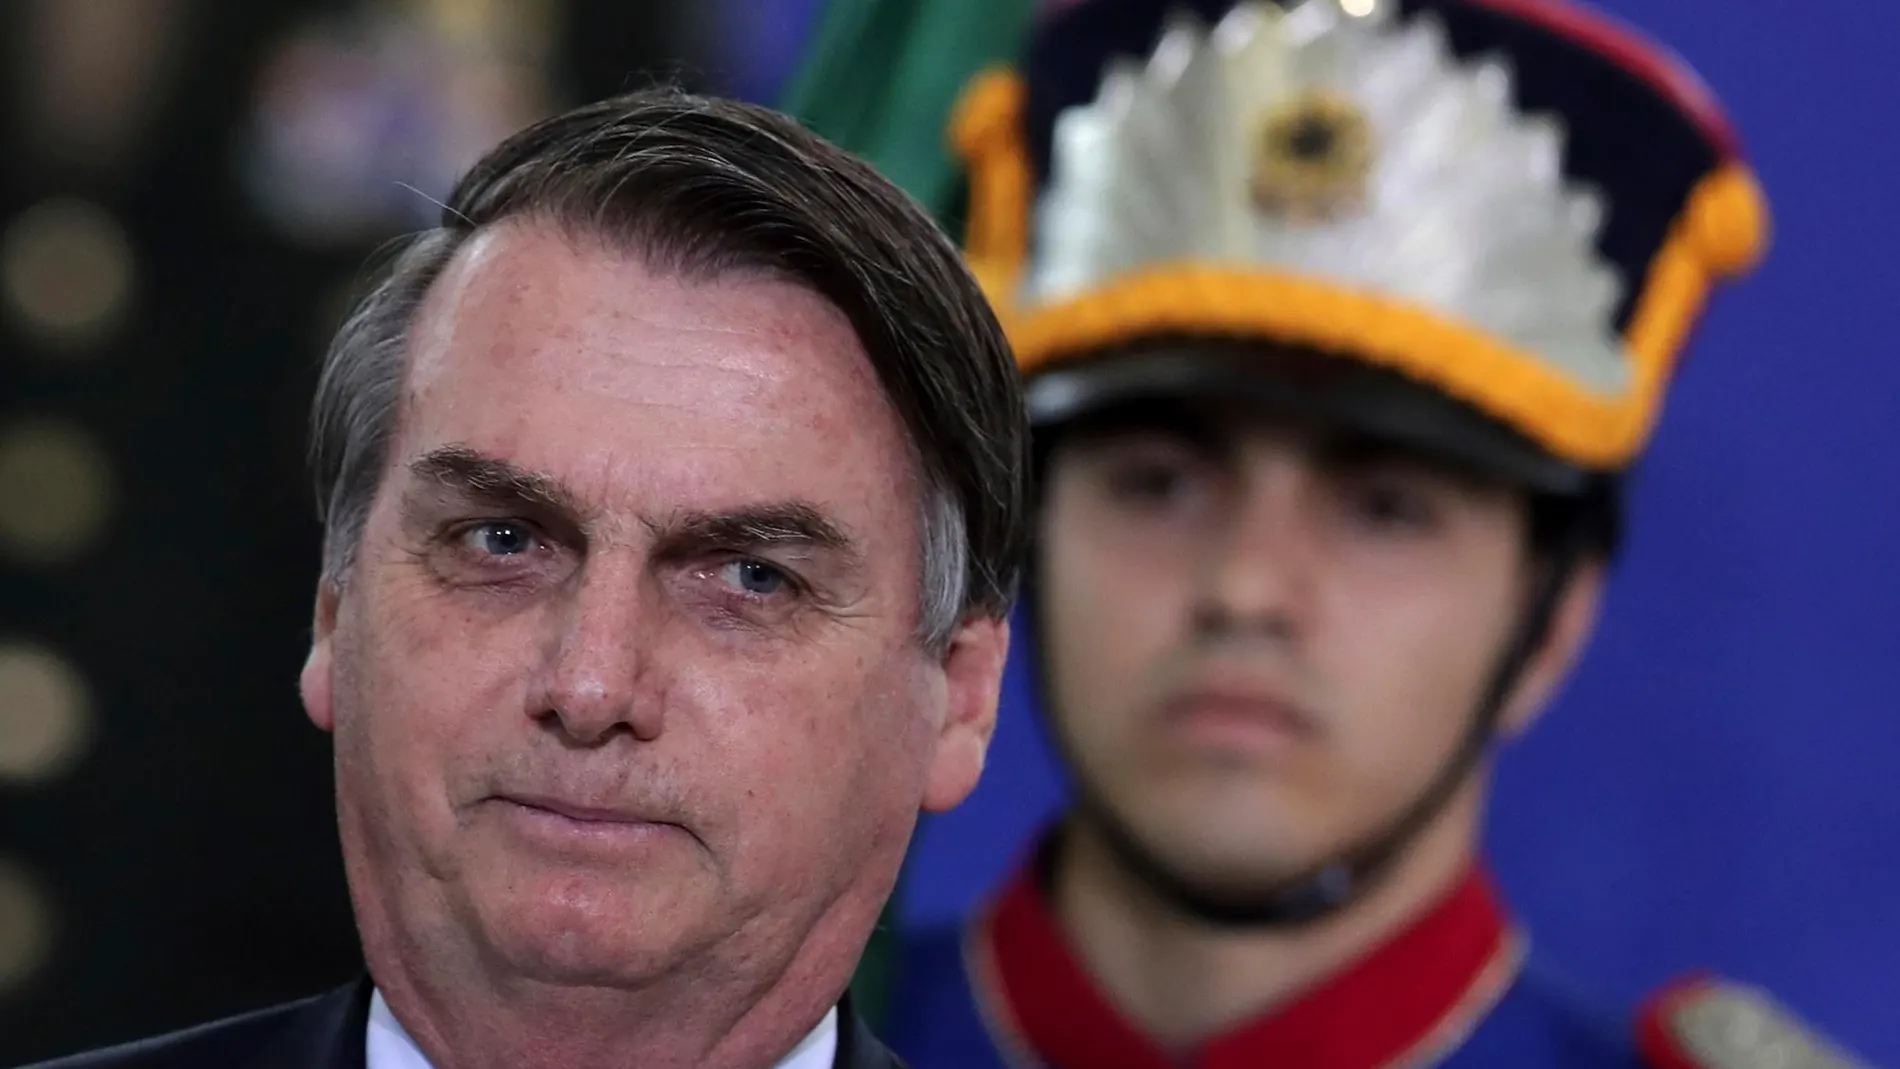 El presidente de Brasil, Jair Bolsonaro, durante un acto en el palacio de Planalto